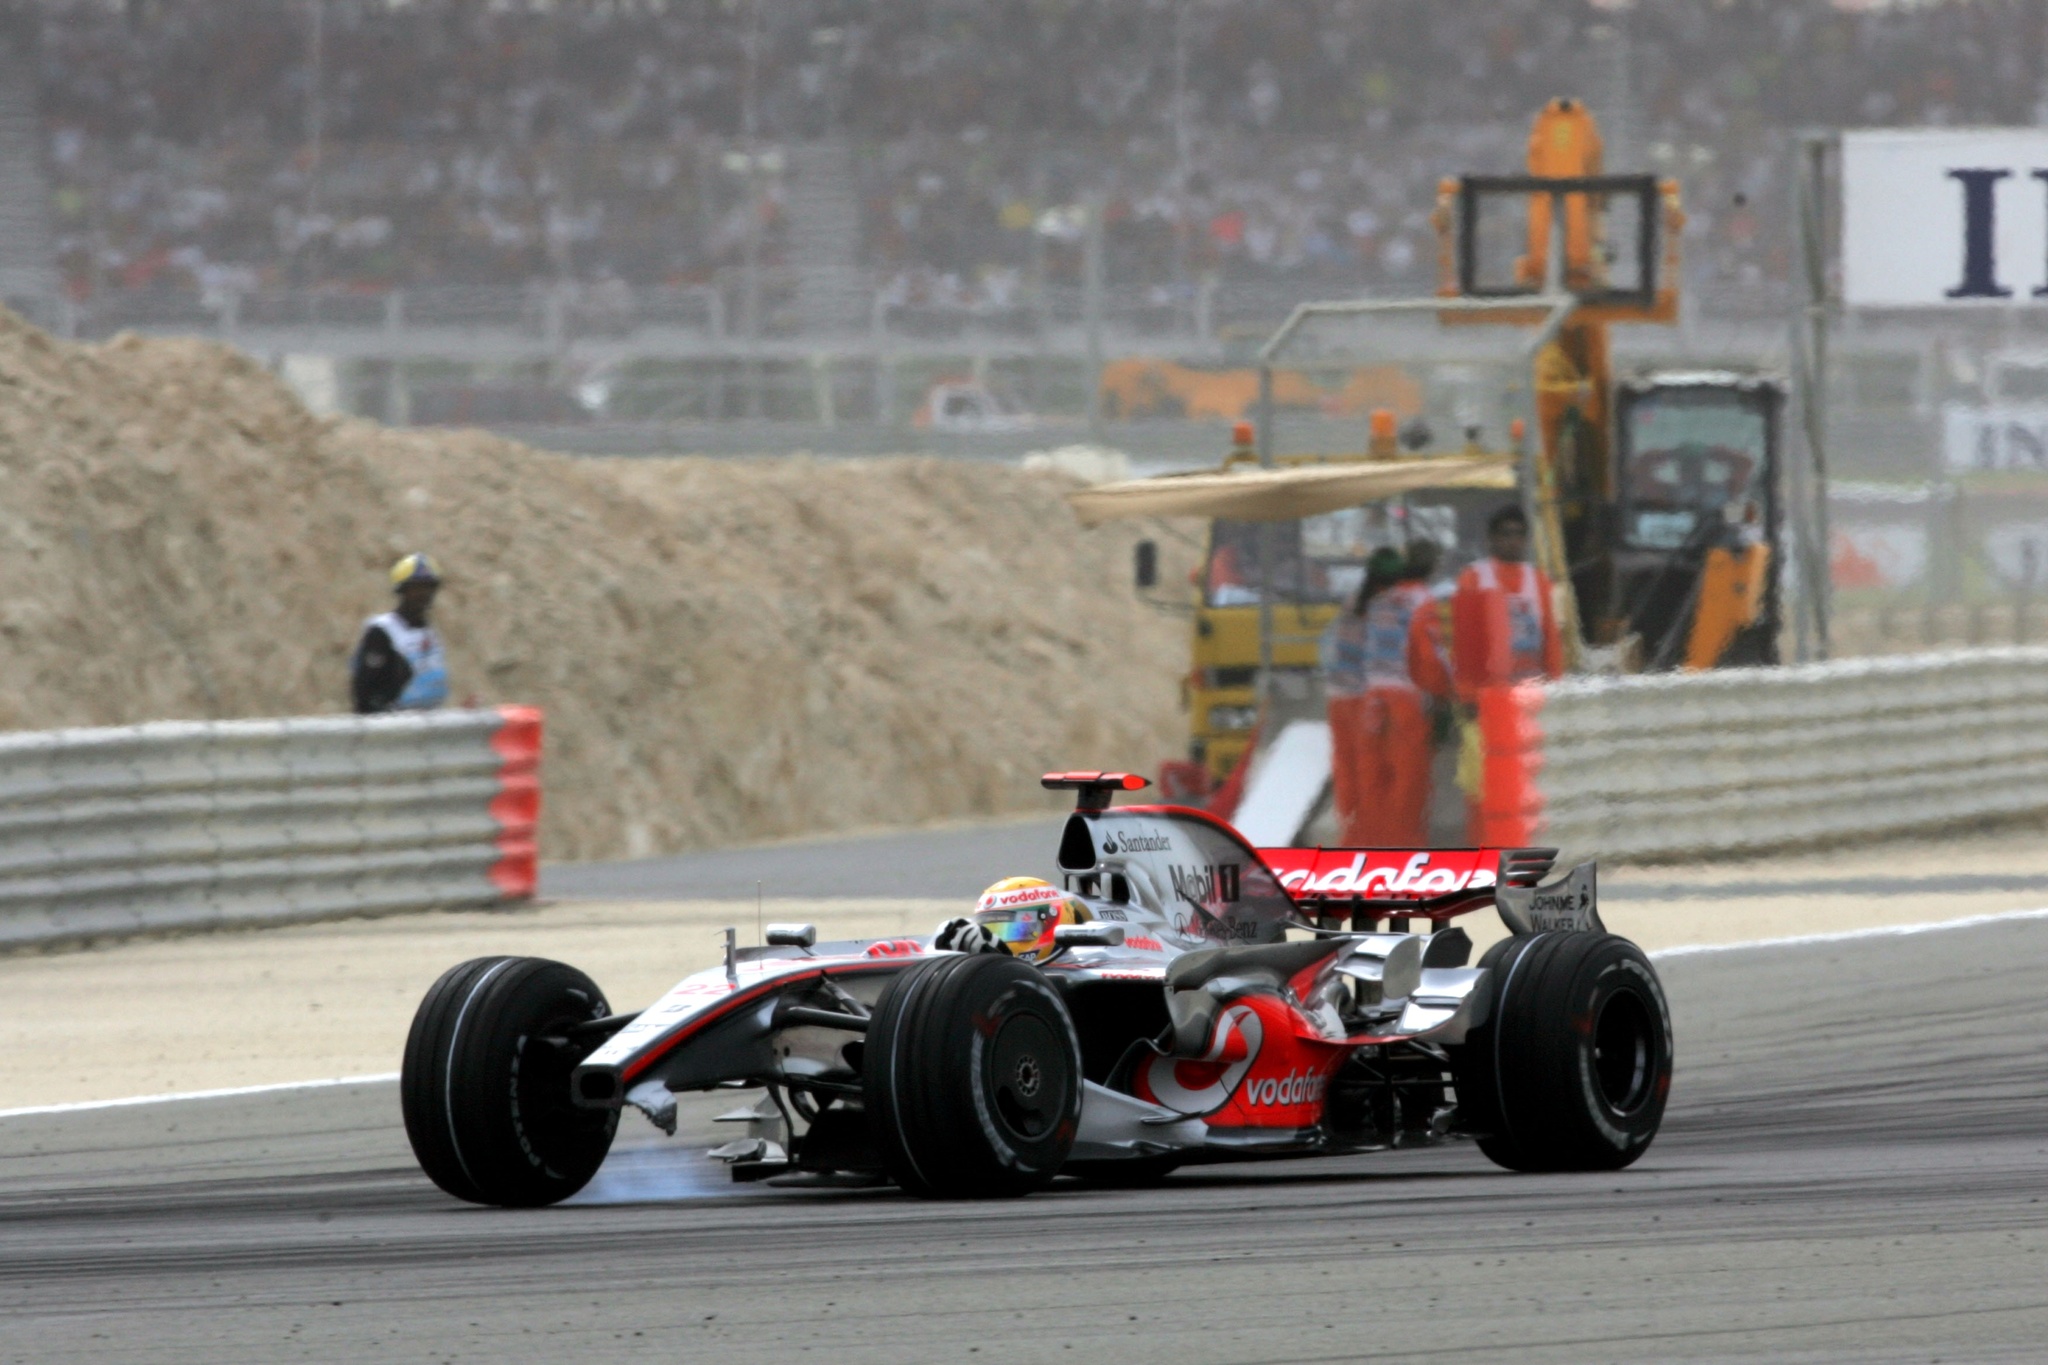 El coche de Hamilton en Bahréin 2008 con el alerón delantero roto | RACING PRESS